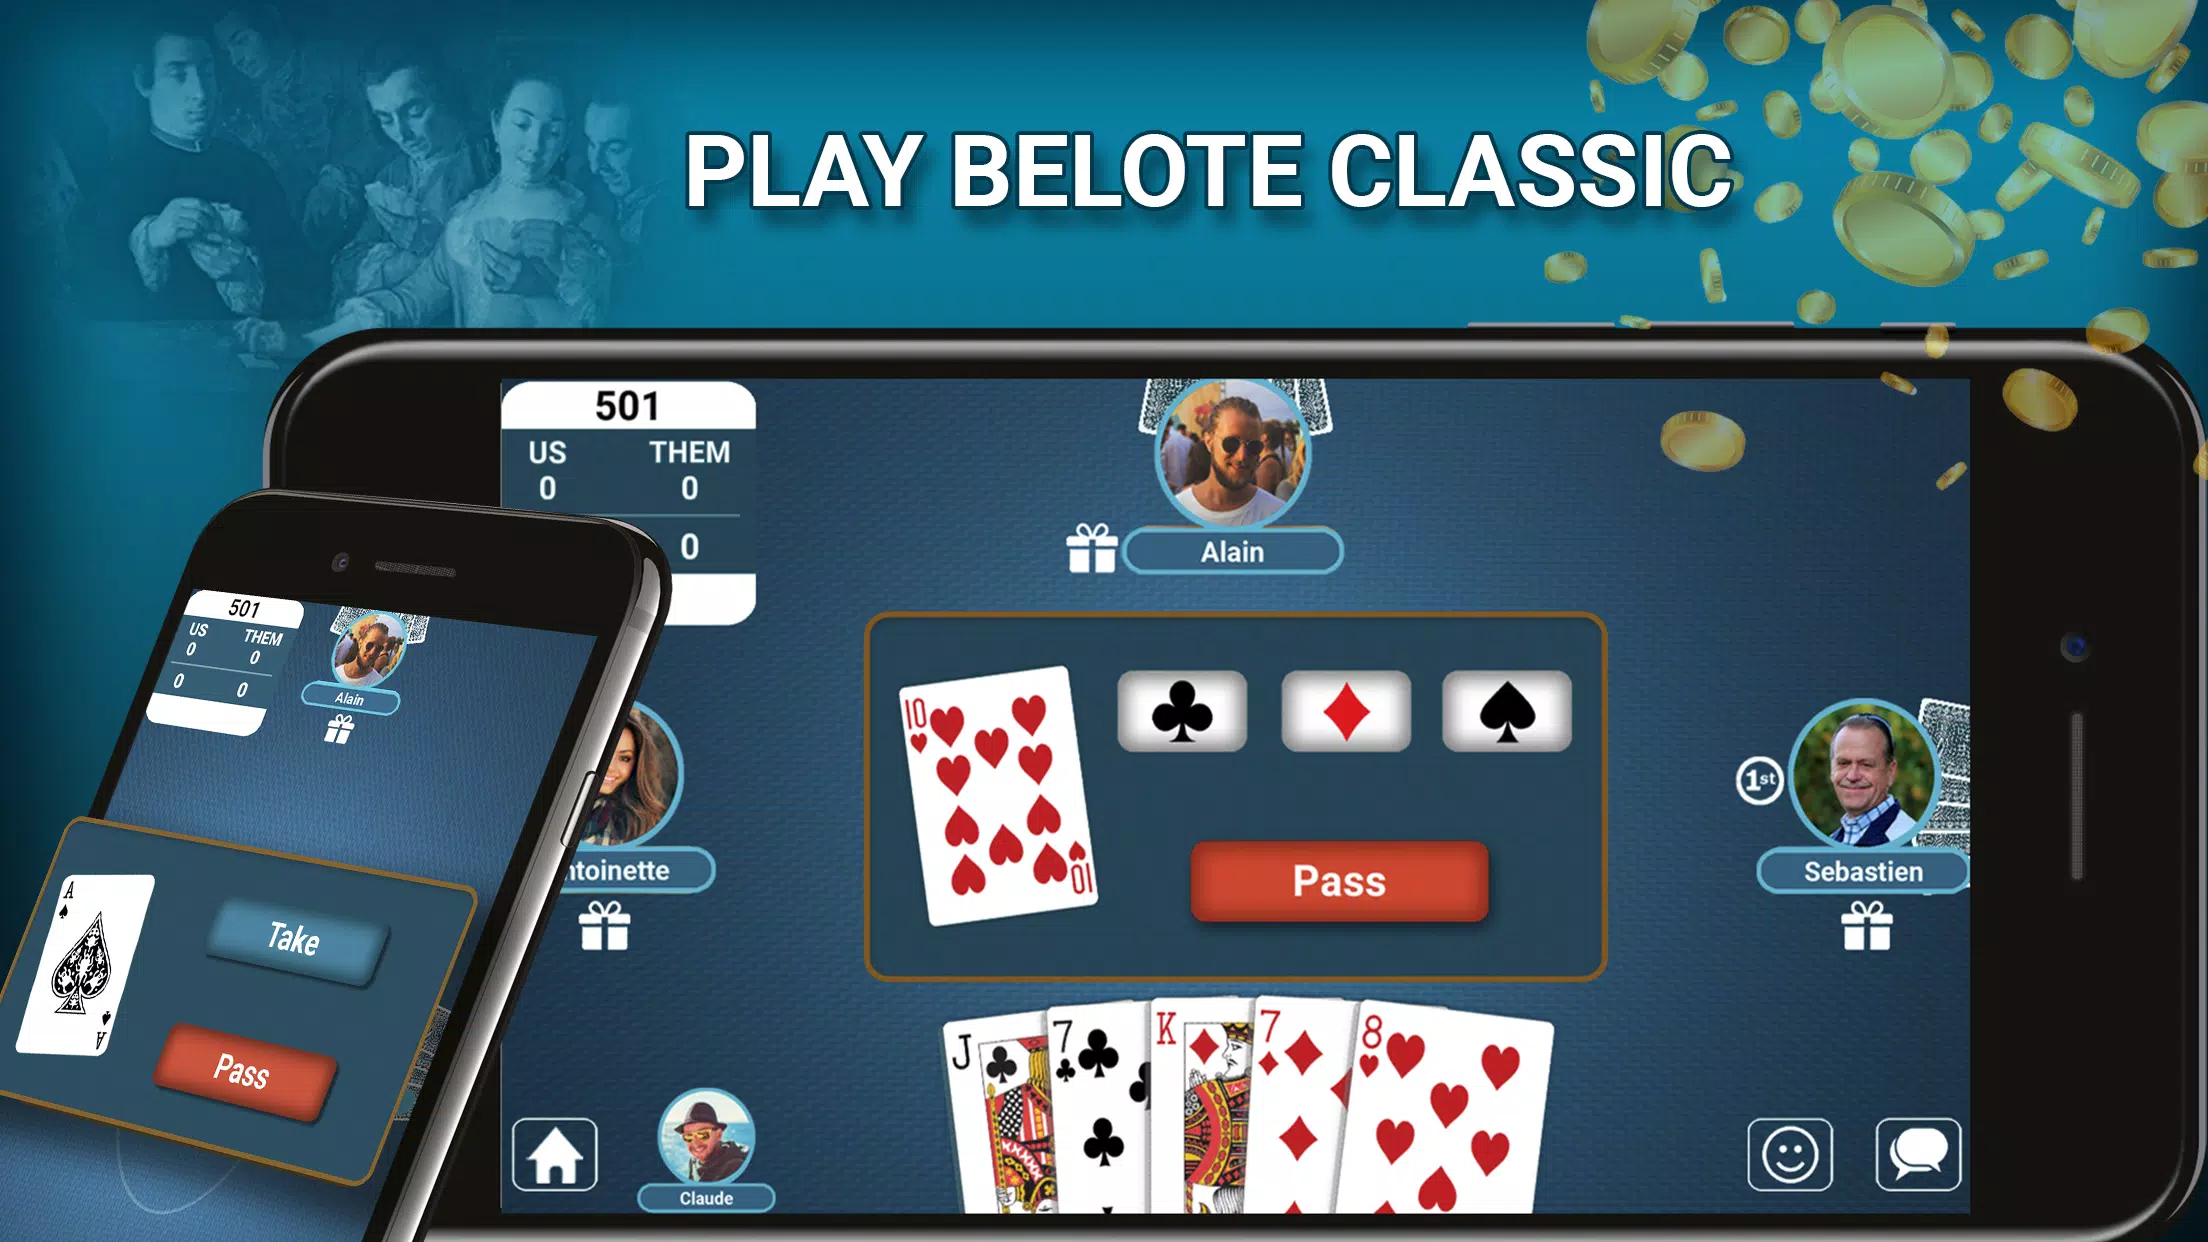 Play Belot Bridge-belote APK for Android - Download